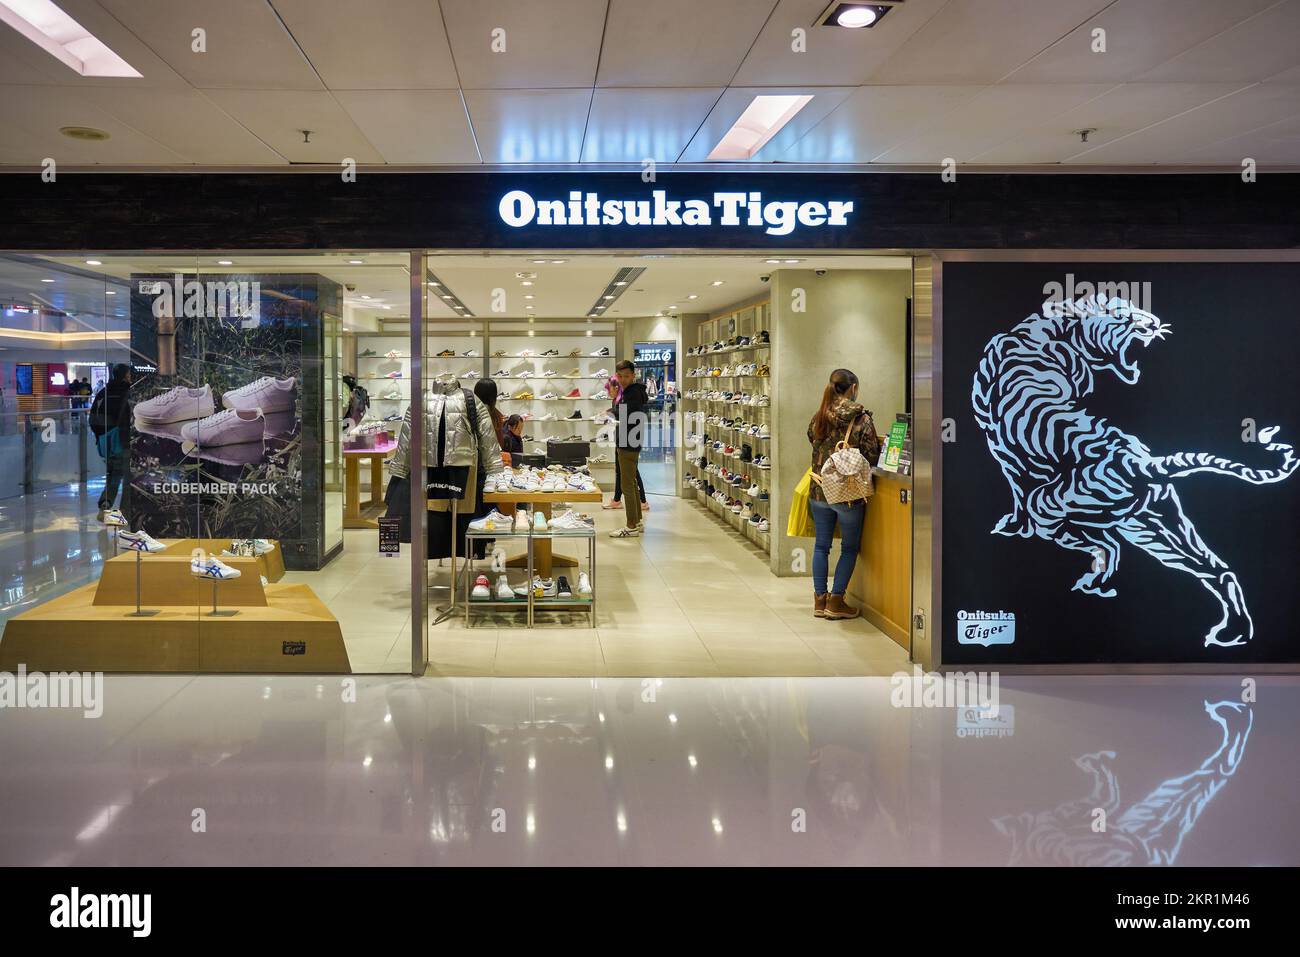 Onitsuka Tiger Shop in Hong Kong Editorial Image - Image of